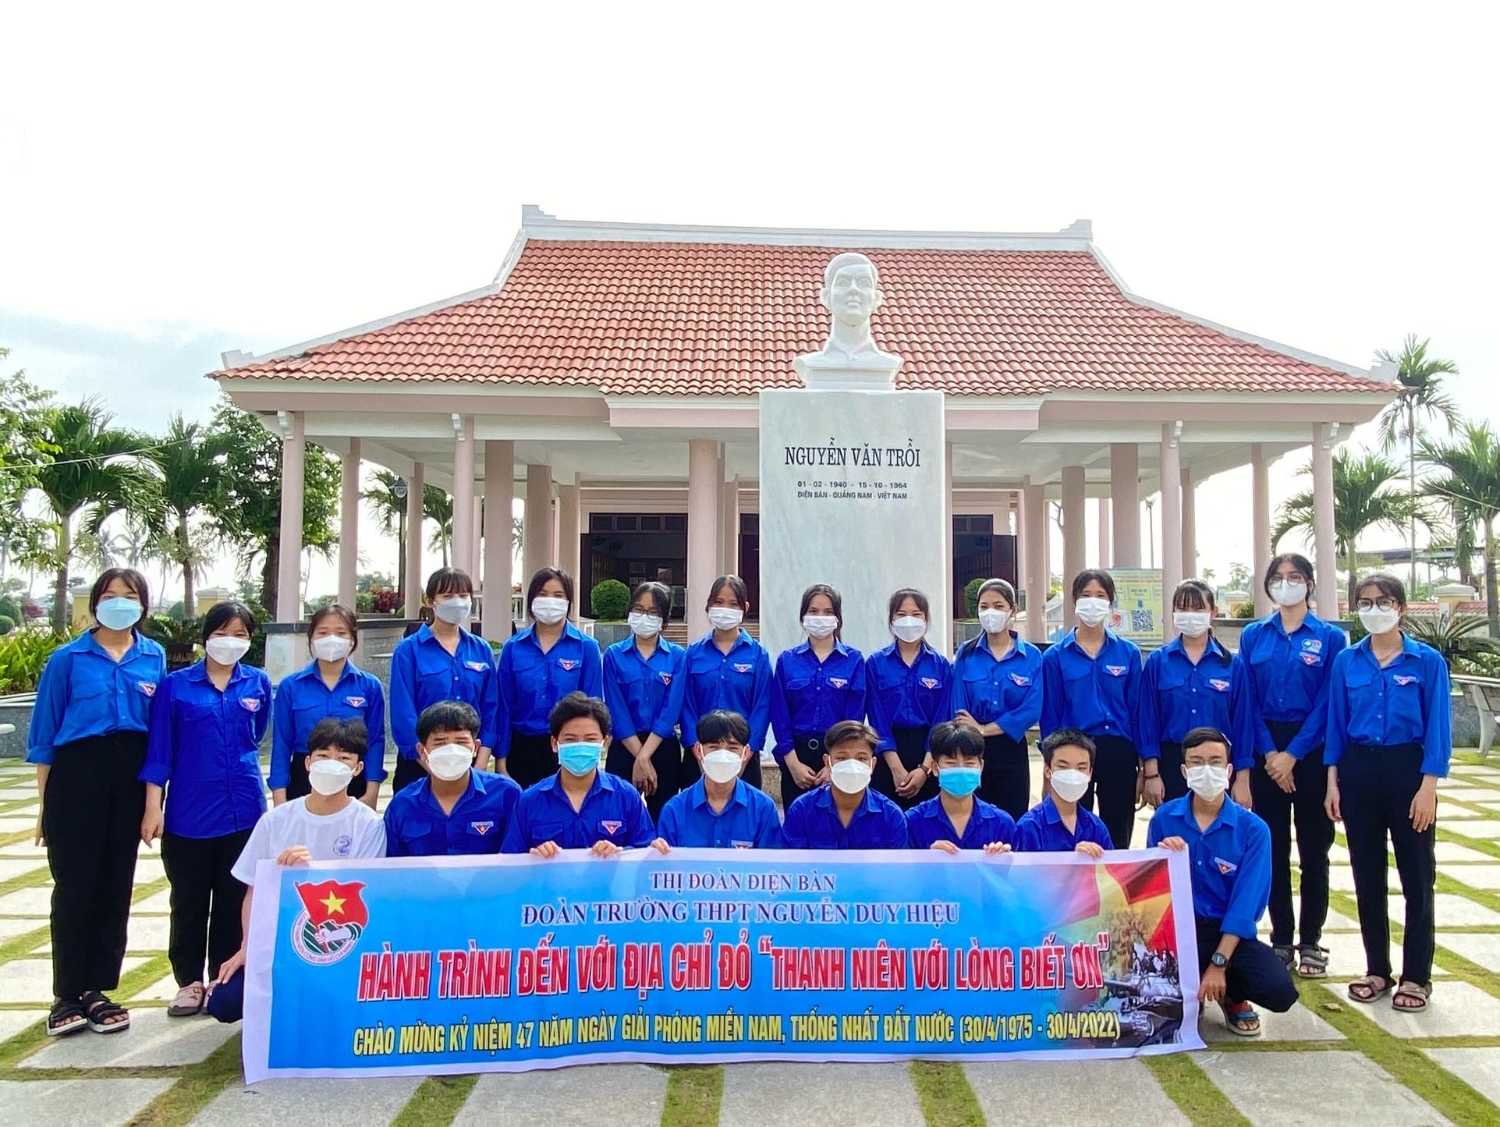 CLB lý luận trẻ trường THPT Nguyễn Duy Hiệu với hành trình về địa chỉ đỏ